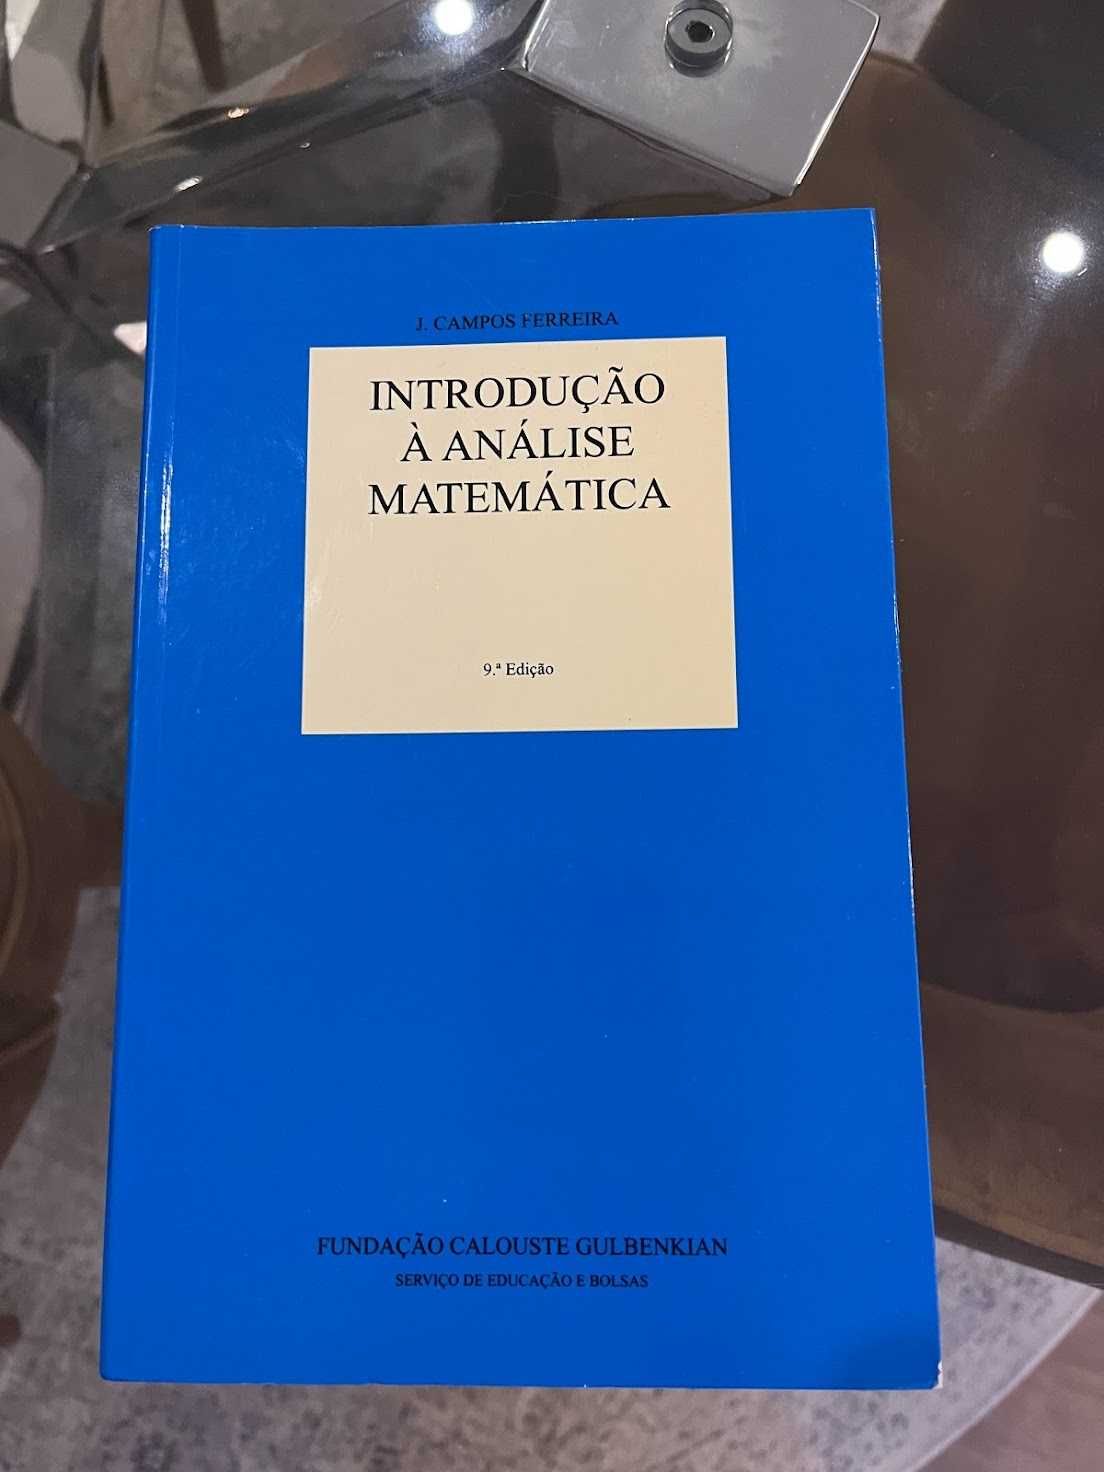 Livro Introdução à Análise Matemática de J. Campos Ferreira